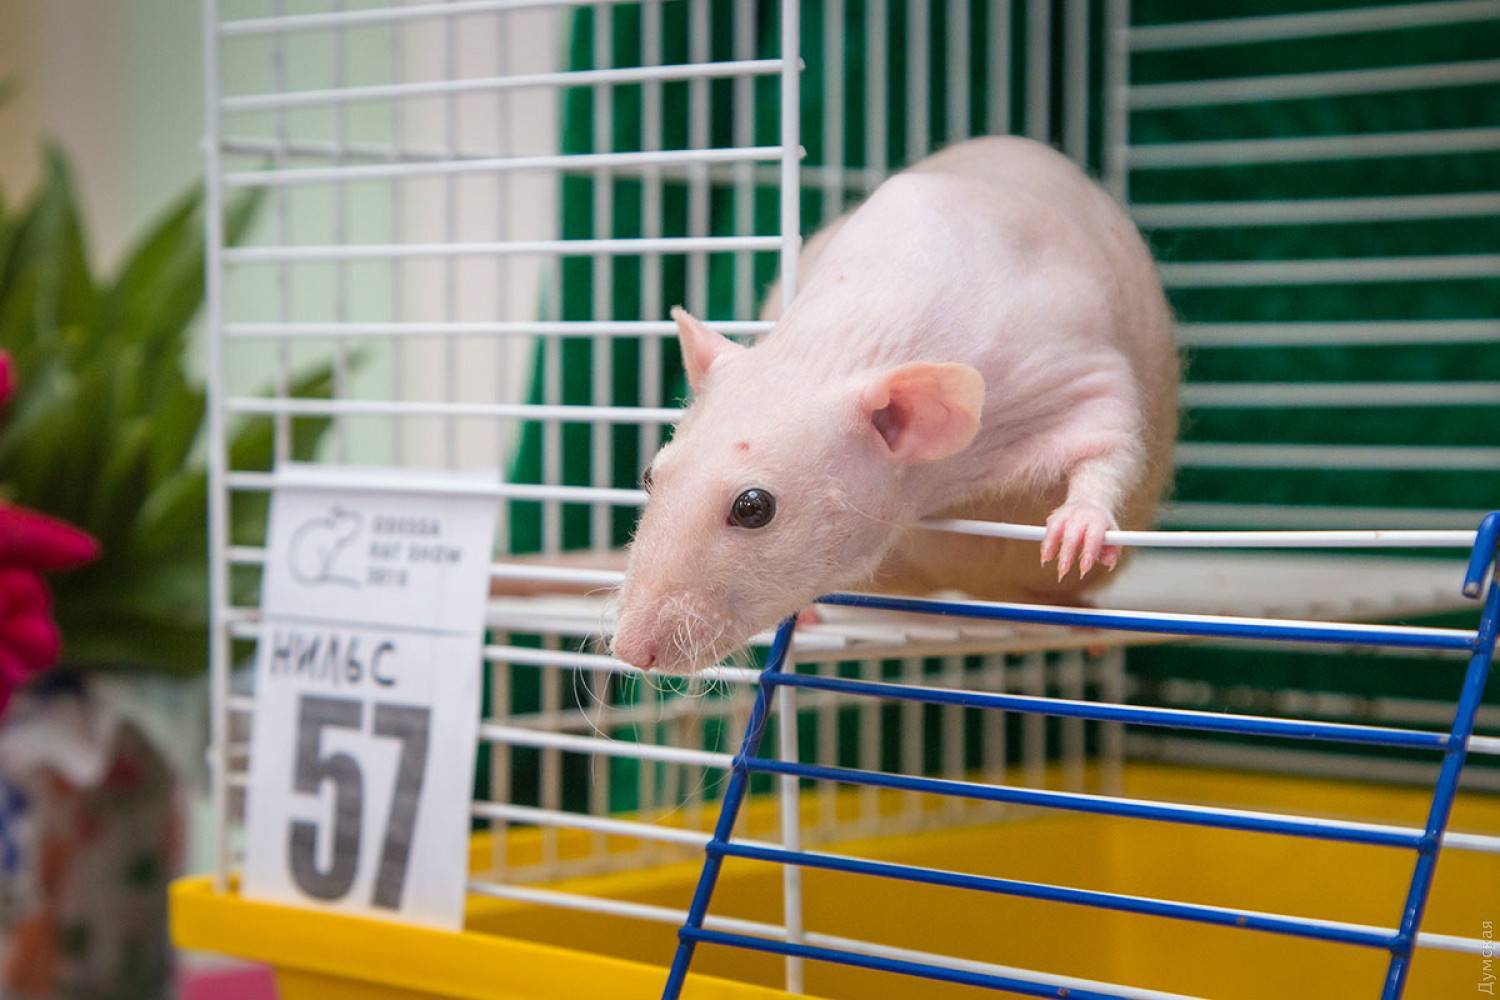 Содержание декоративных крыс в домашних условиях